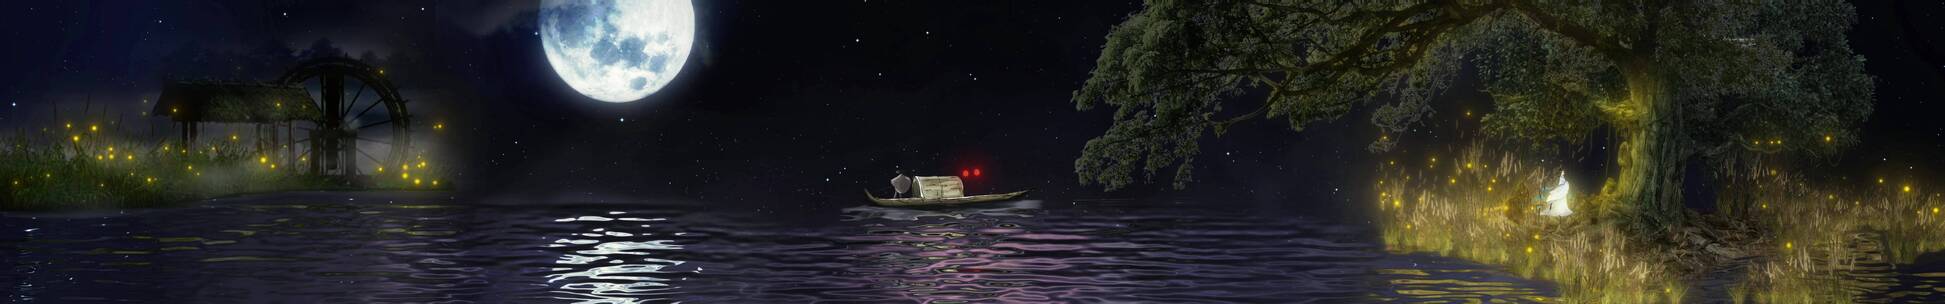 孤清夜色 江边夜景  月光 江面 垂柳